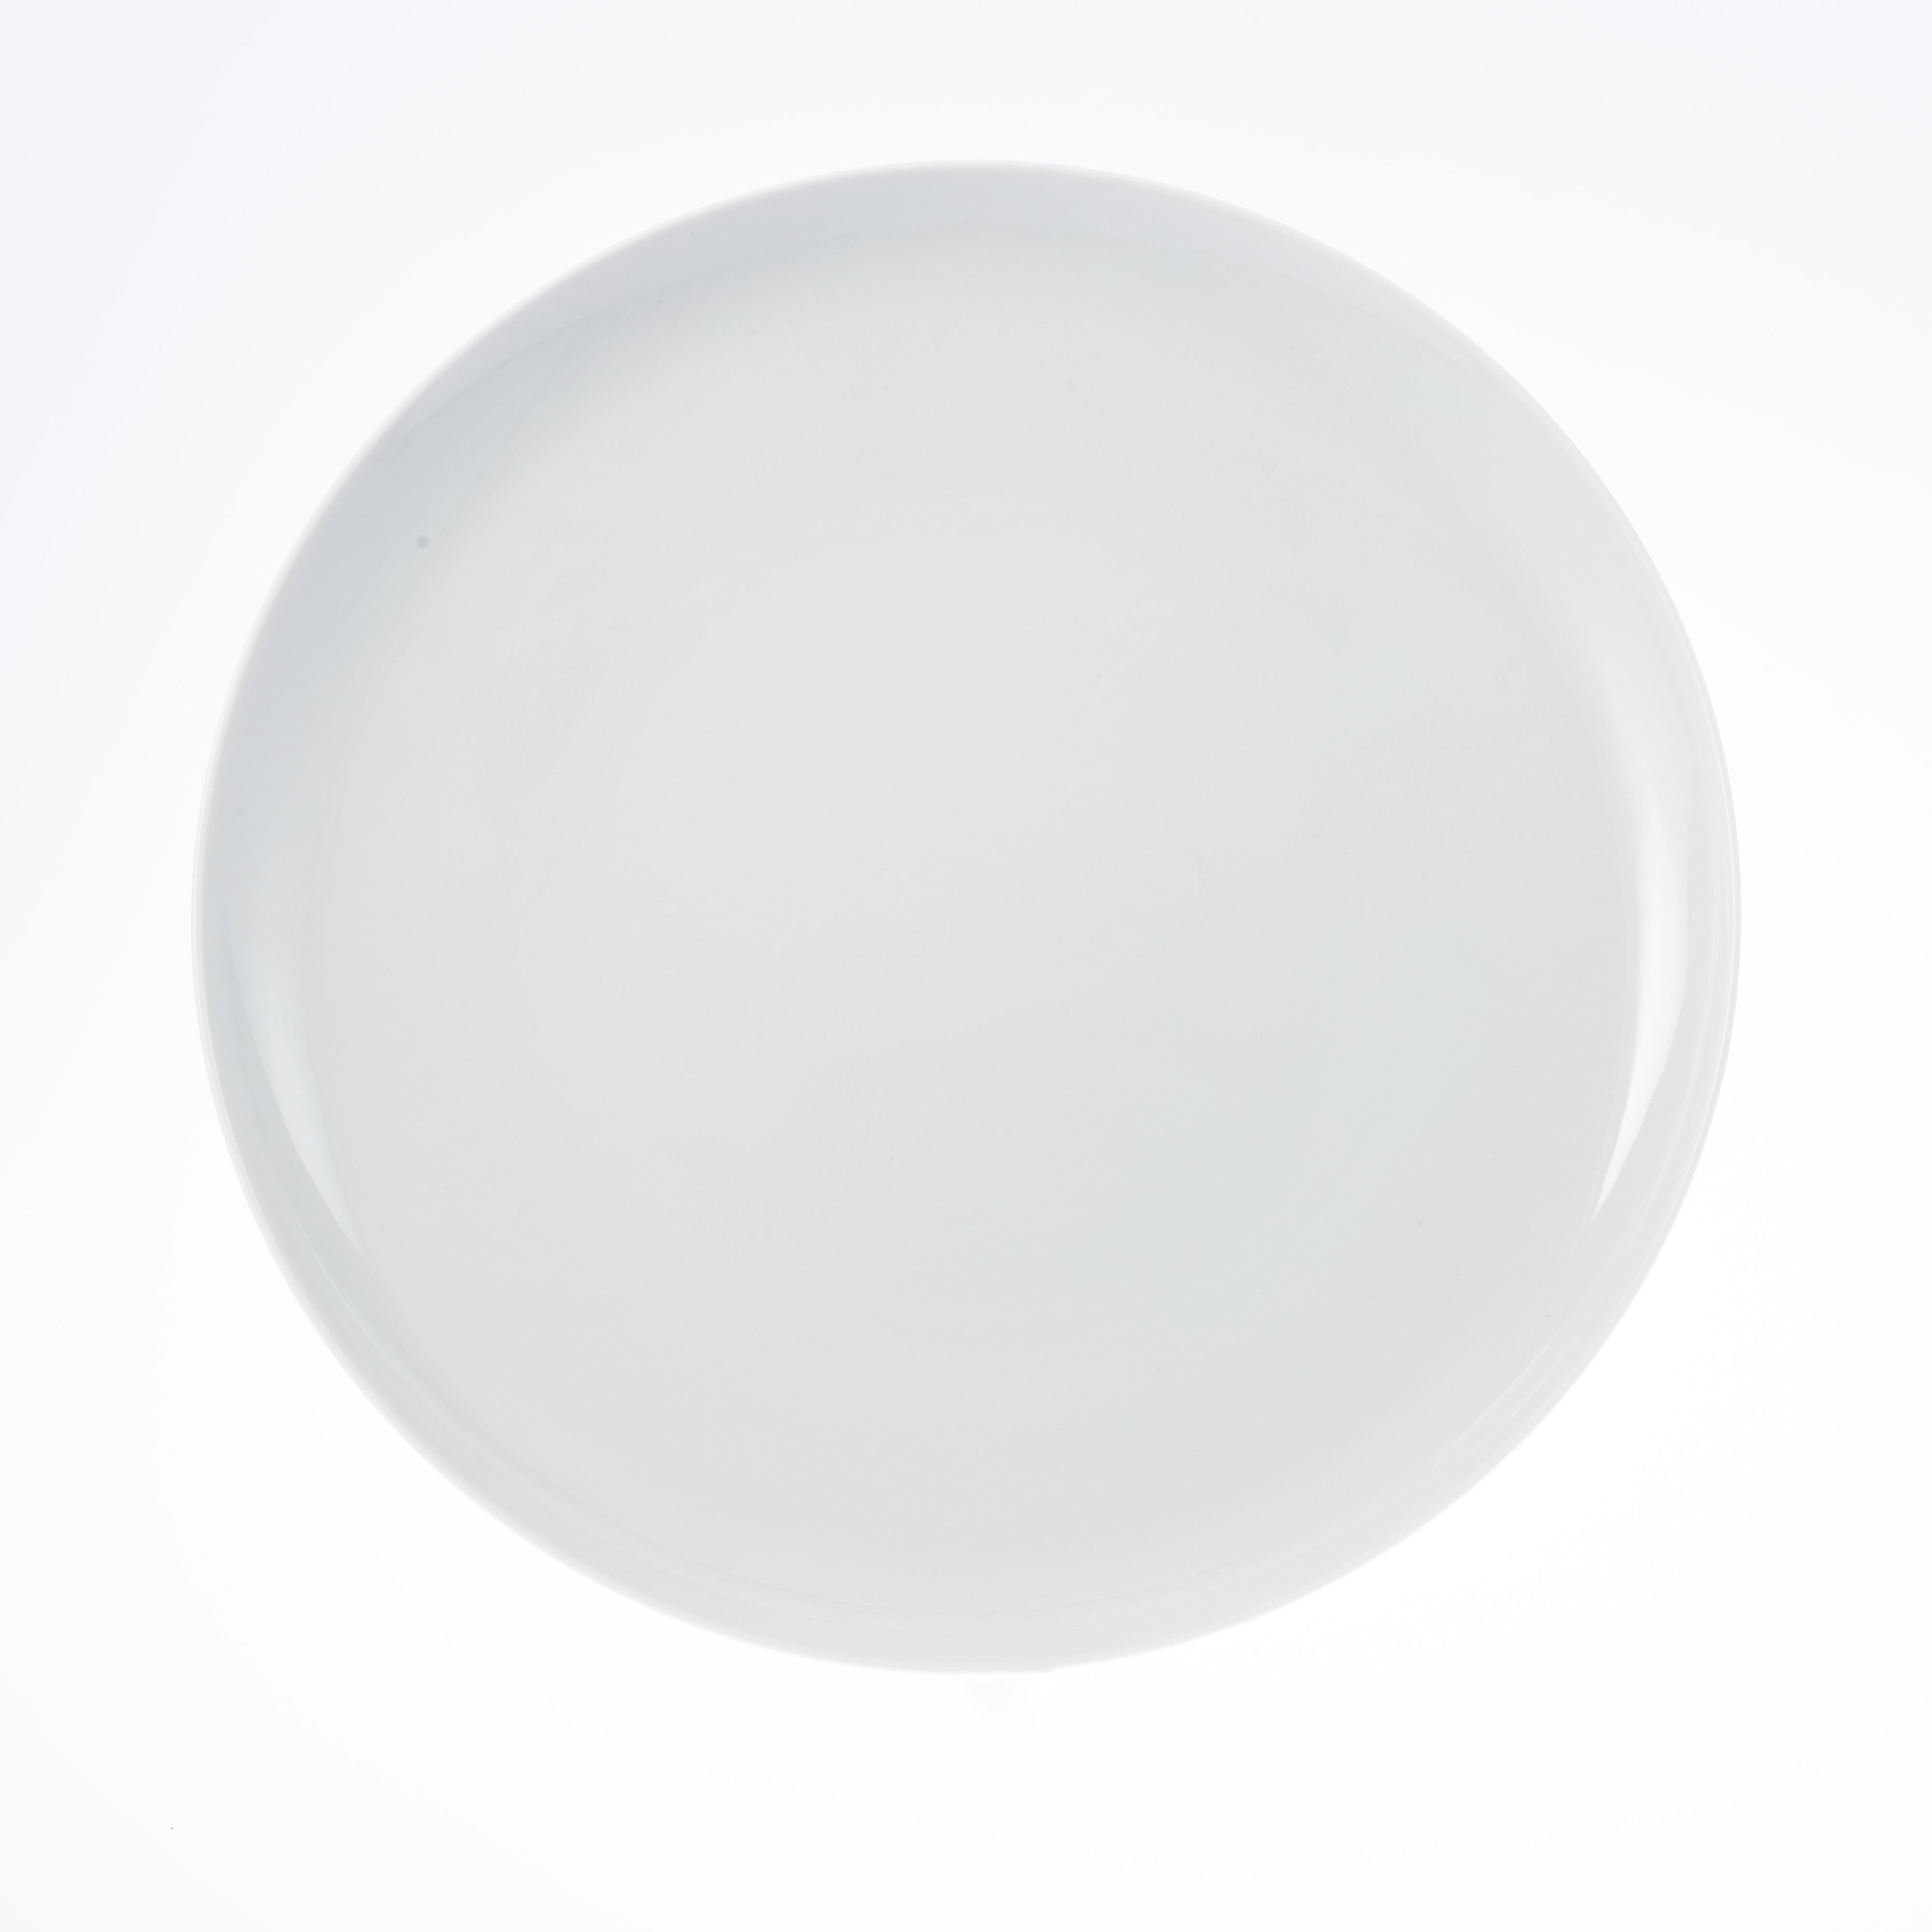 Servierplatte SOLEA, rund, flach, Durchm. 30 cm, von caterado. Aus weißem Porzellan. Auch als Pizzateller geeignet (bis ca. 26 cm).